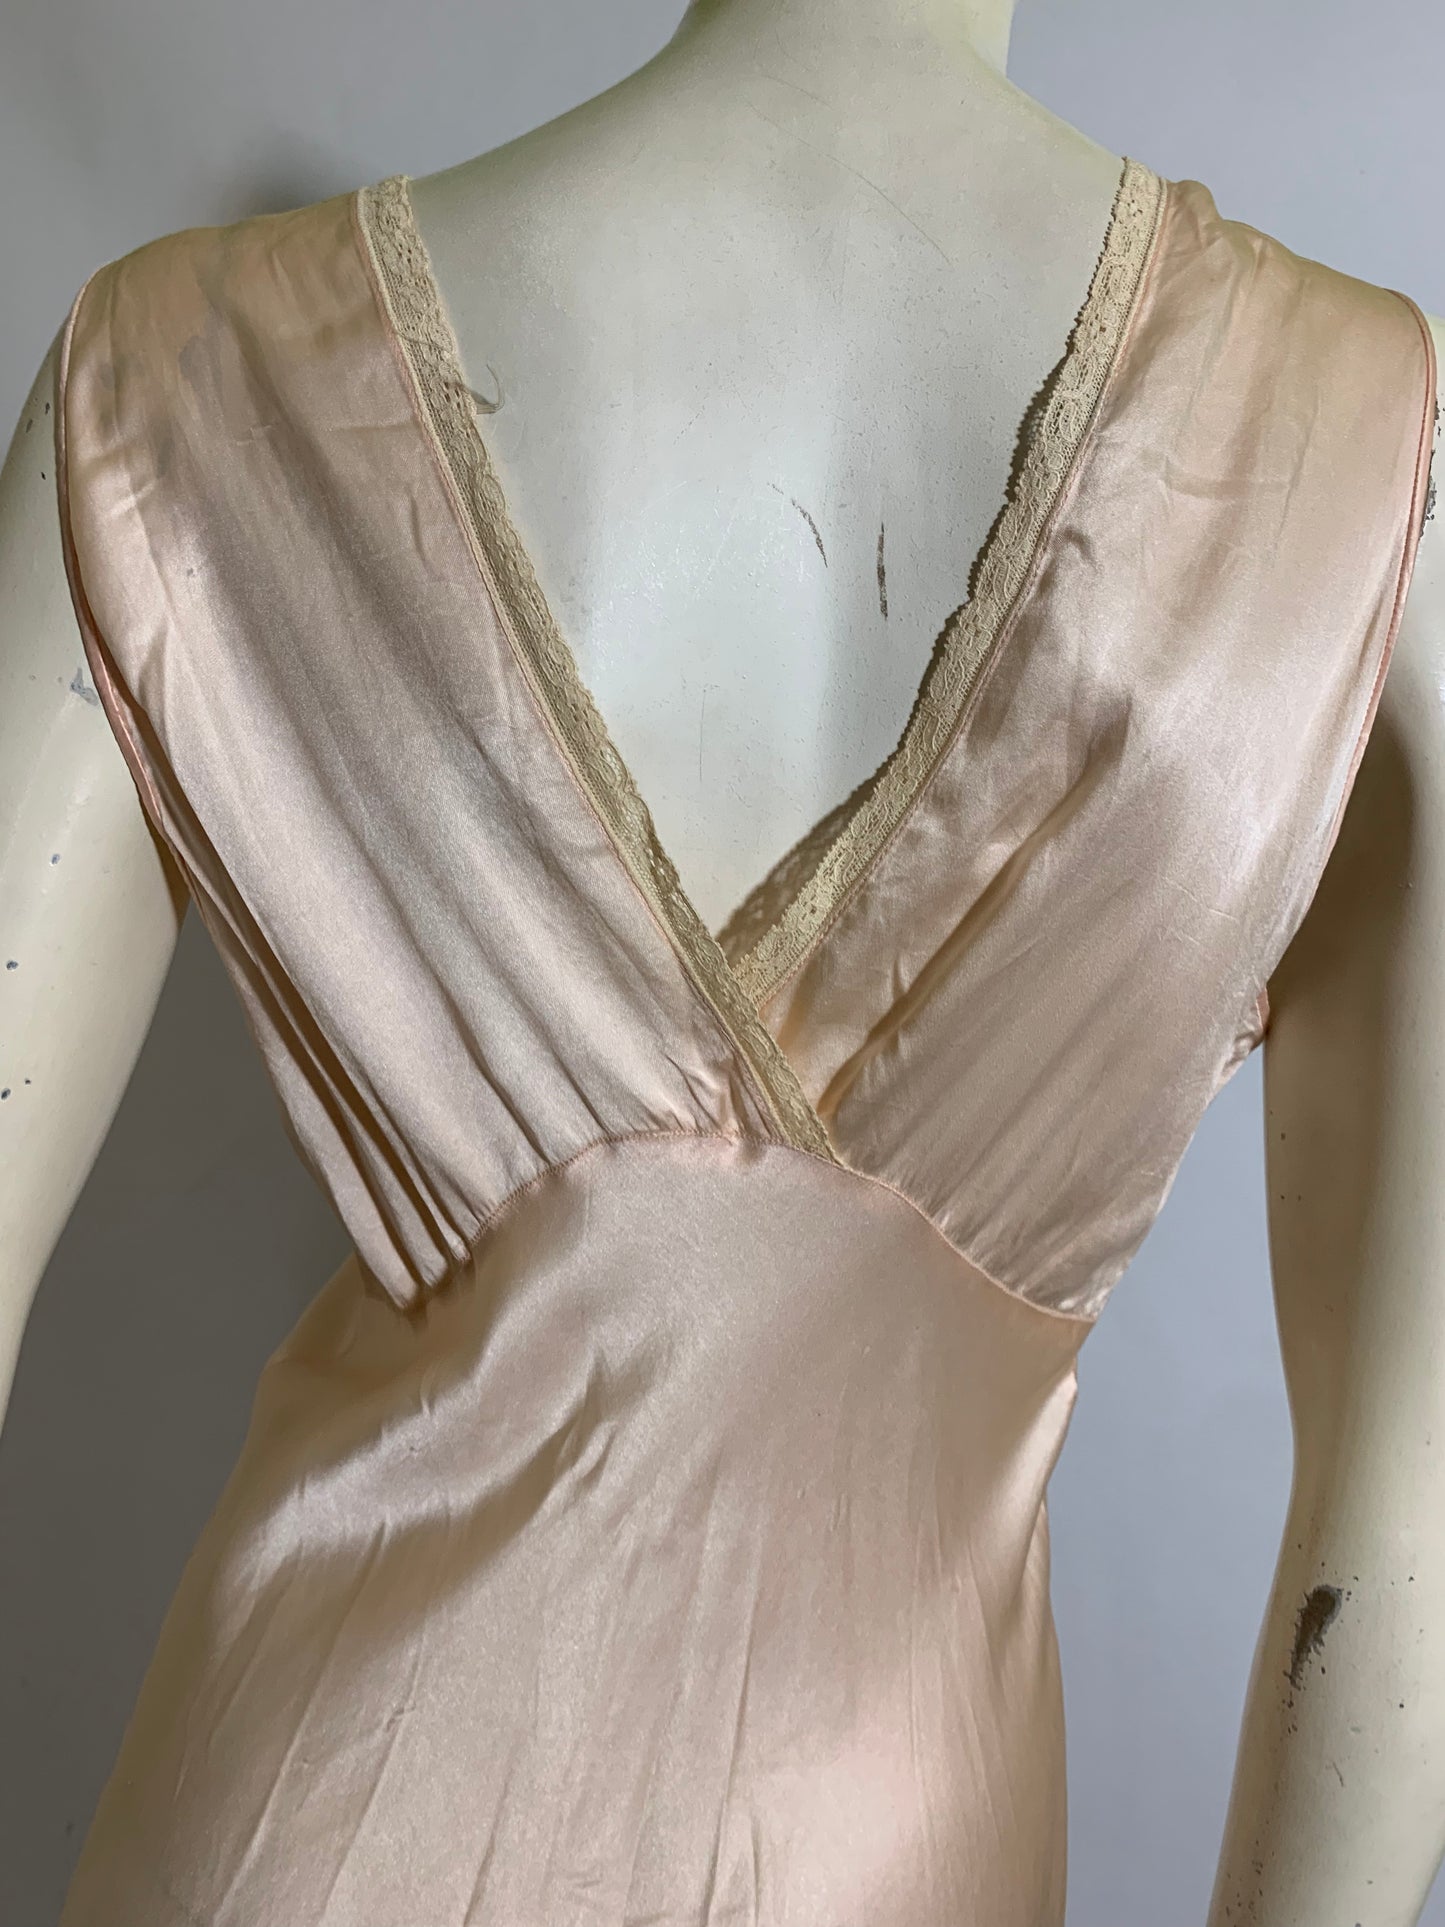 Lace Trimmed Peach Silk Bias Cut Nightgown circa 1930s